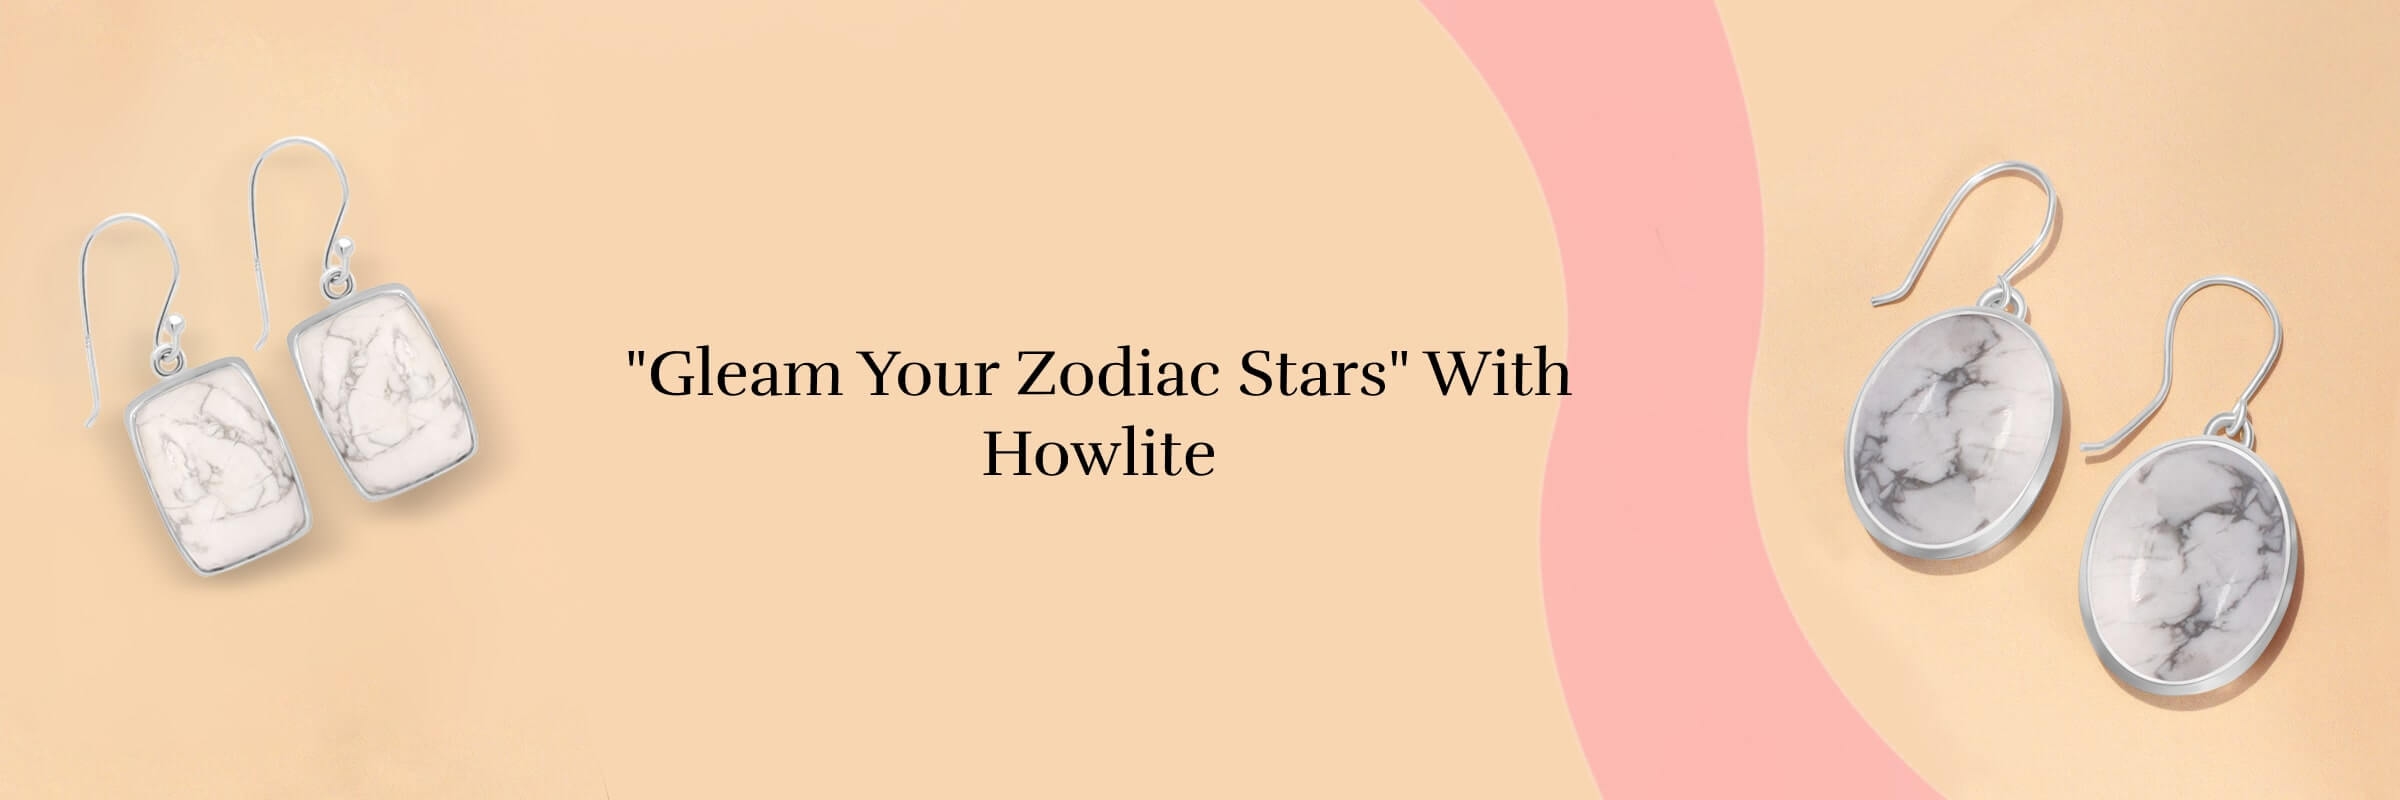 Howlite Zodiac Birthstone